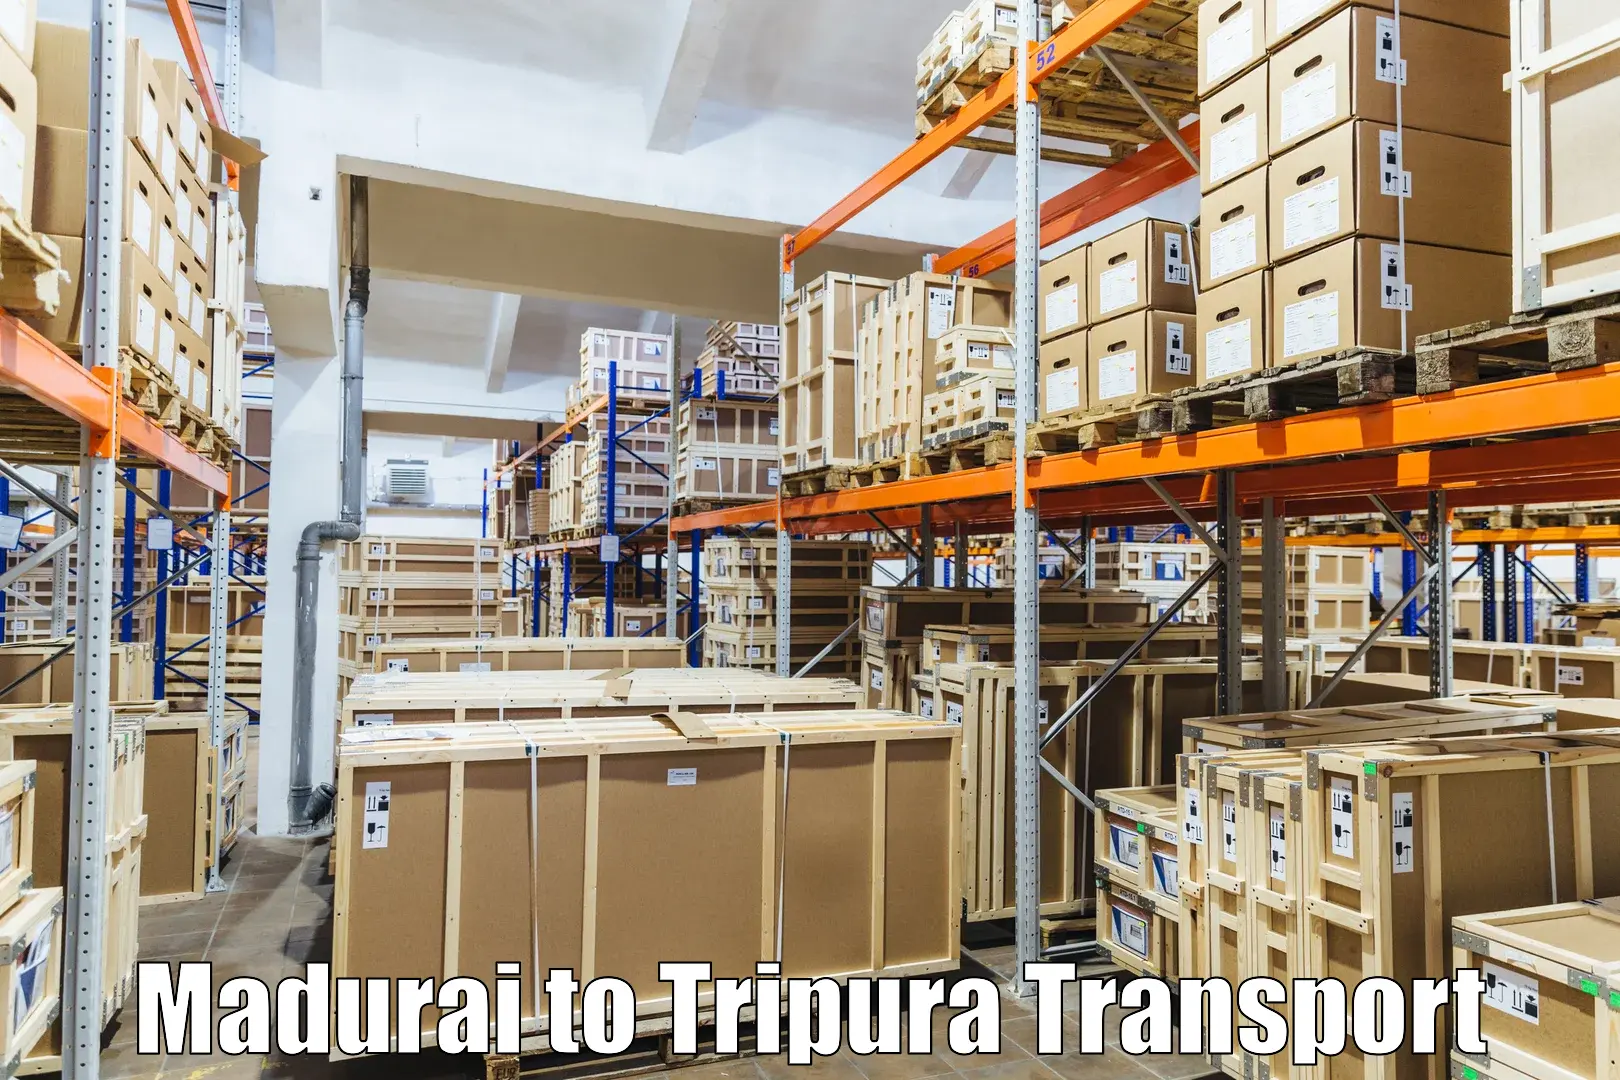 Furniture transport service in Madurai to Manughat